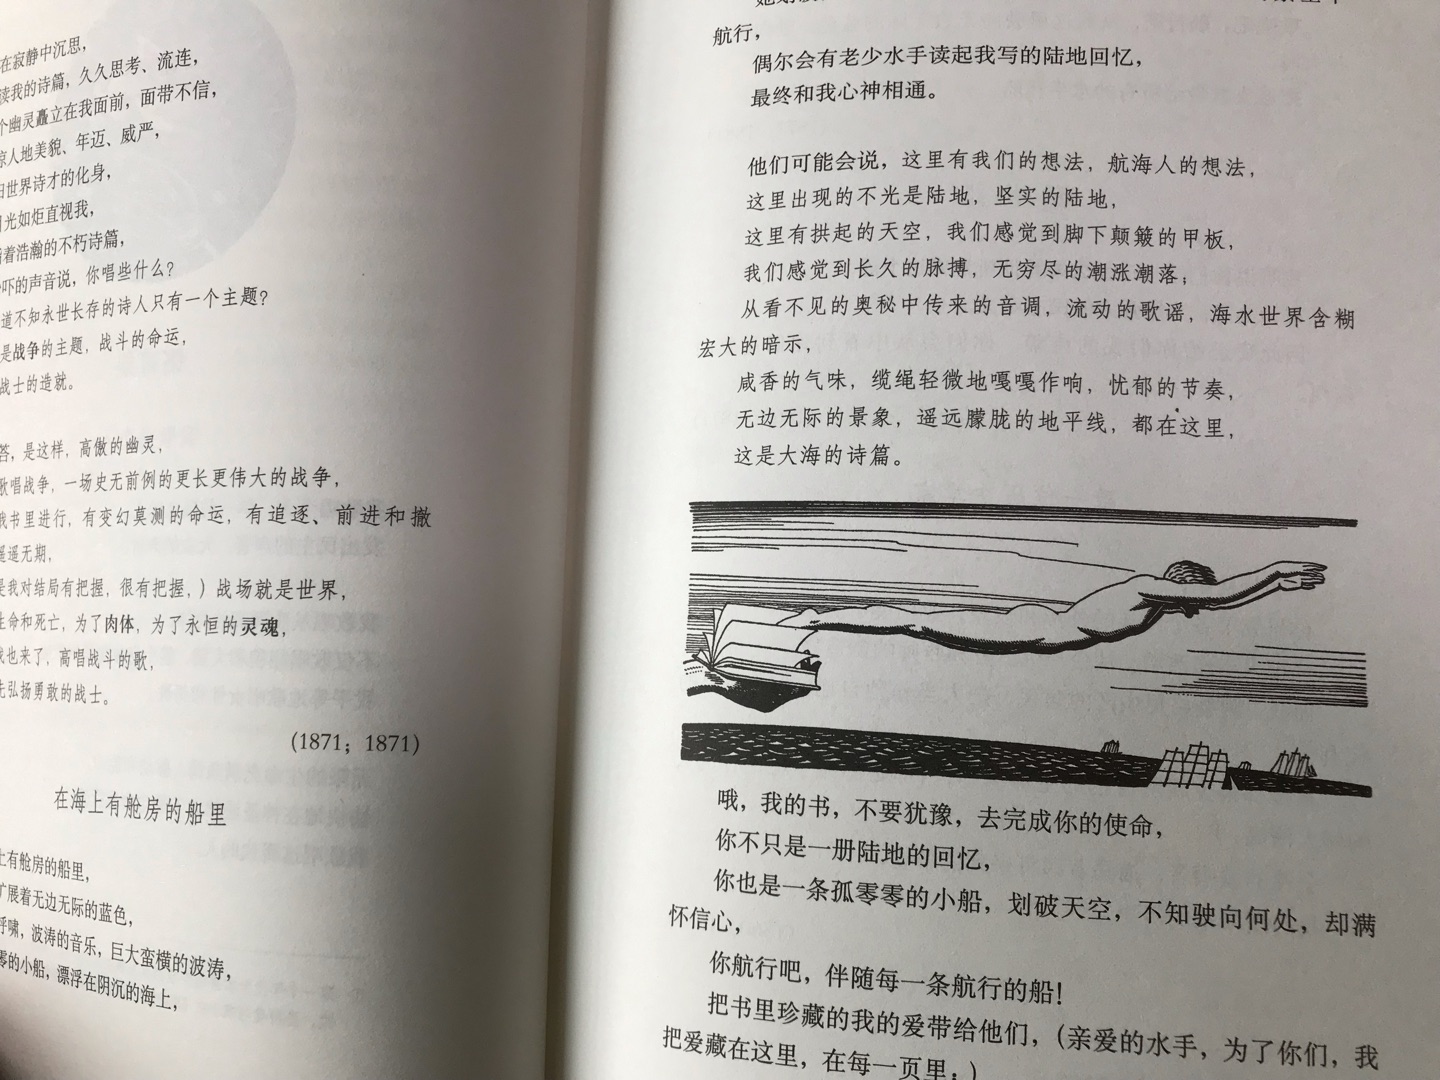 从没有奢望中译本《草叶集》会出现这样一个经典的版本，感谢上海译文出版社的策划和编辑，让中文版本的世界文学名著有了令人垂青的版本！